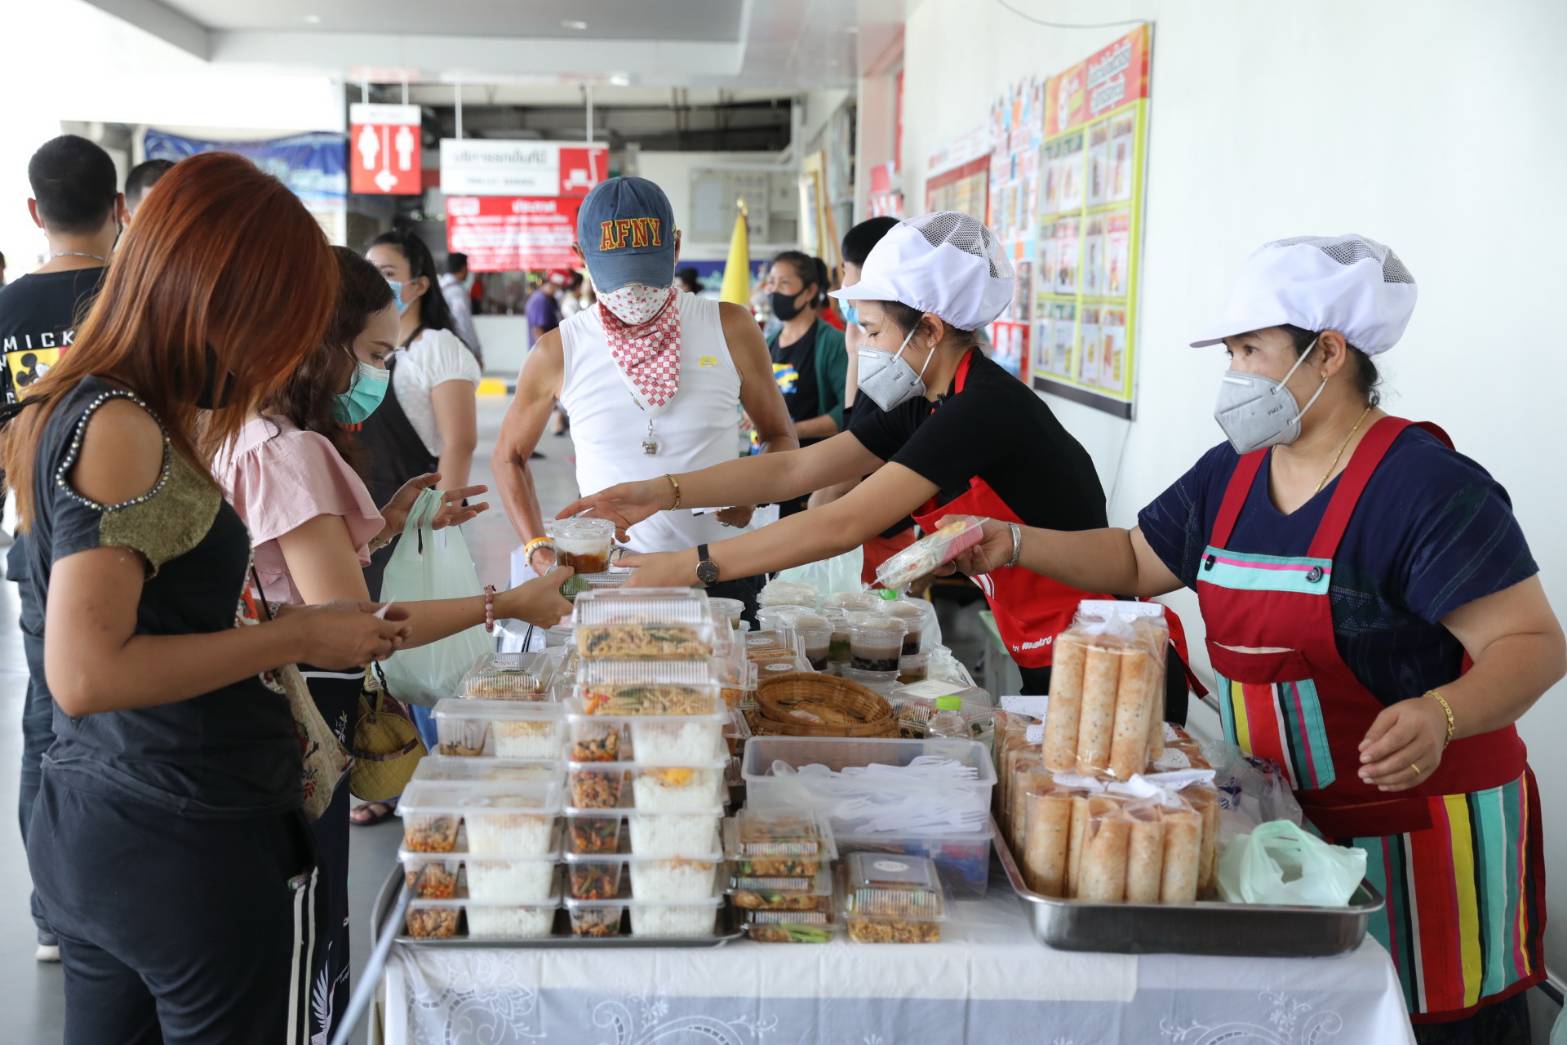 แม็คโคร เปิดพื้นที่ฟรีหน้า 83 สาขาทั่วไทย ต่อลมหายใจร้านอาหาร หนุนช่วยเหลือเร่งด่วนทุกช่องทาง พร้อมเคียงข้างผู้ประกอบการสู้วิกฤตโควิด-19